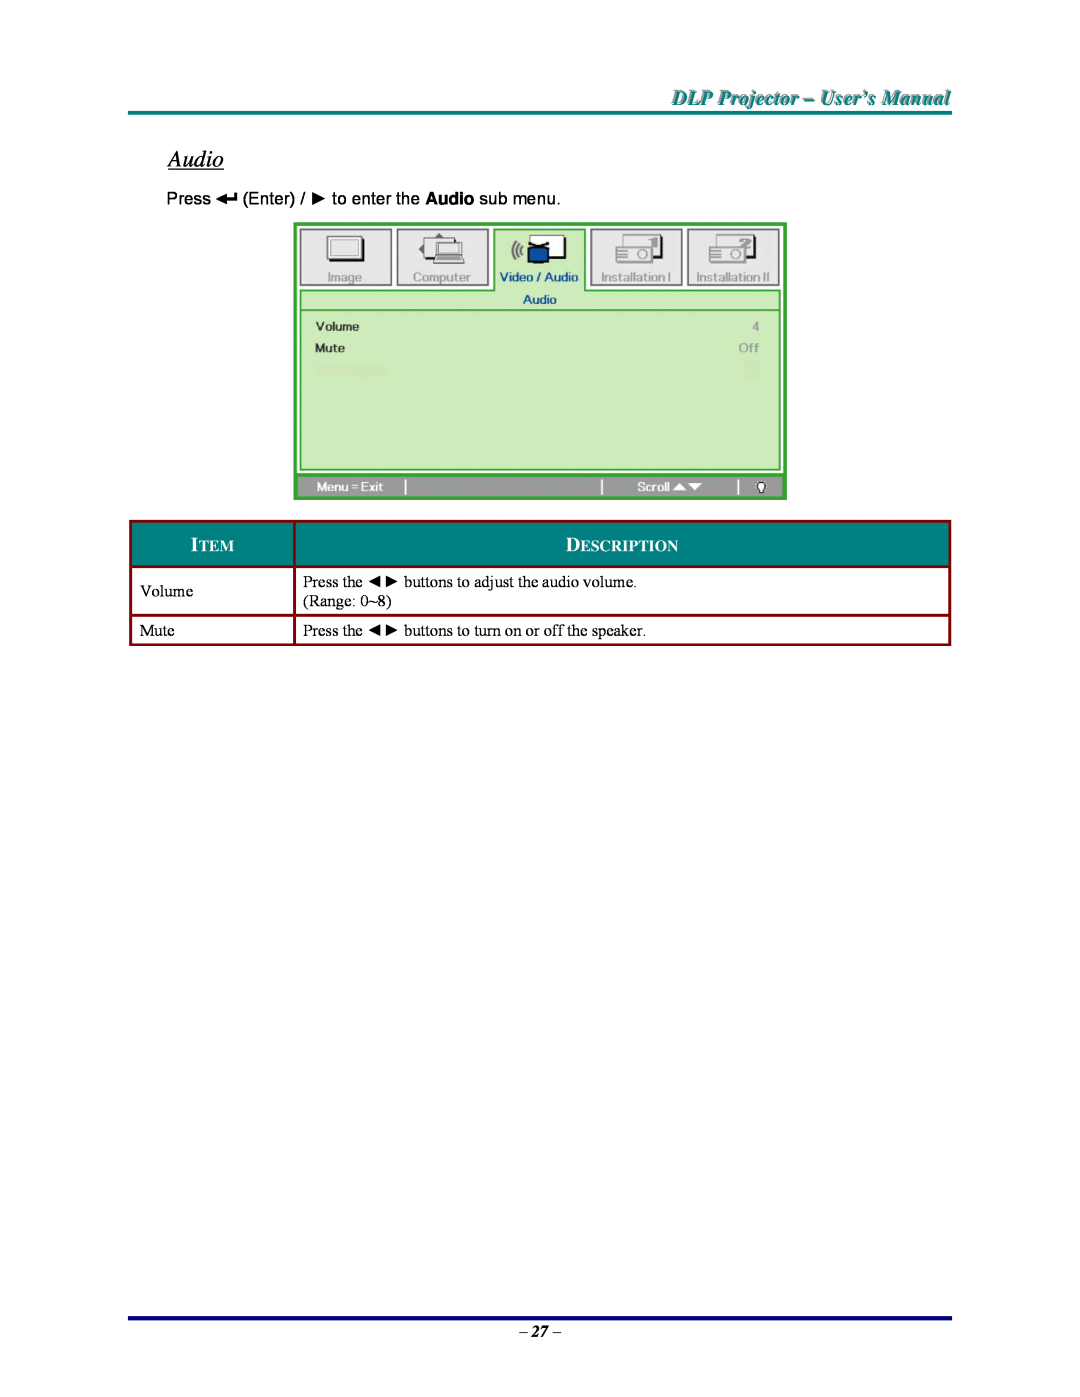 Vivitek DP825MS, D825MS DLP Projjecttor - User’s Manuall, Press Enter / to enter the Audio sub menu, Description 